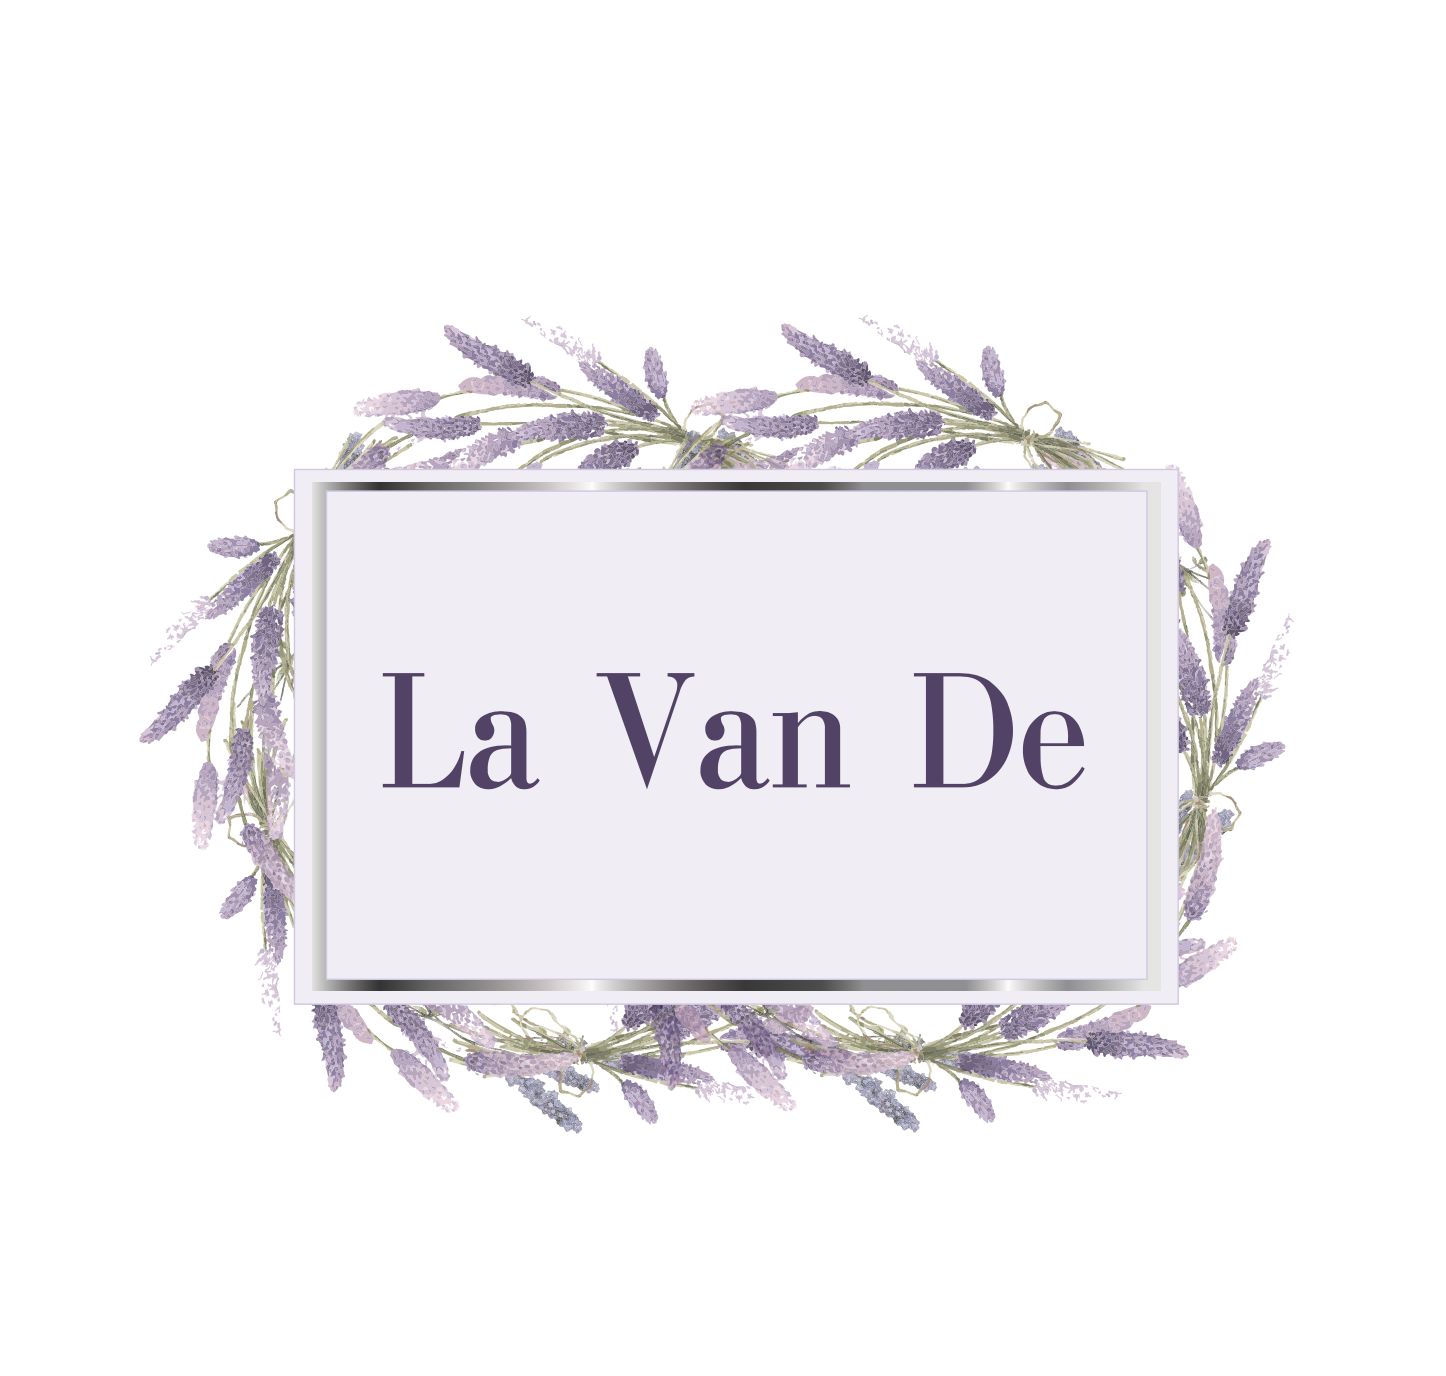 La Van De